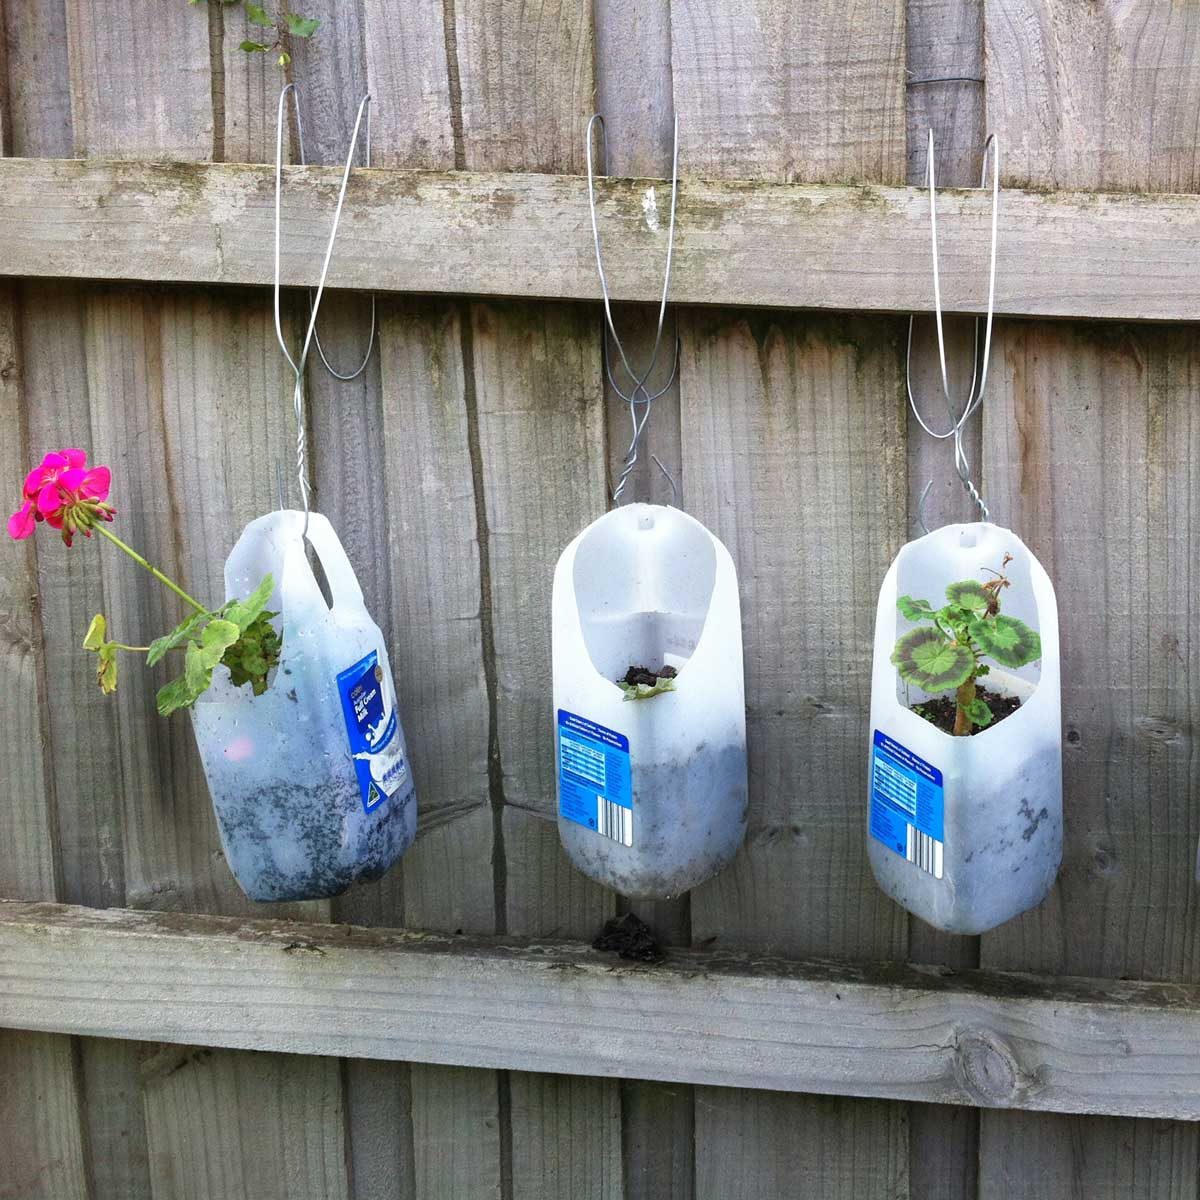 Best way to reuse empty milk jug